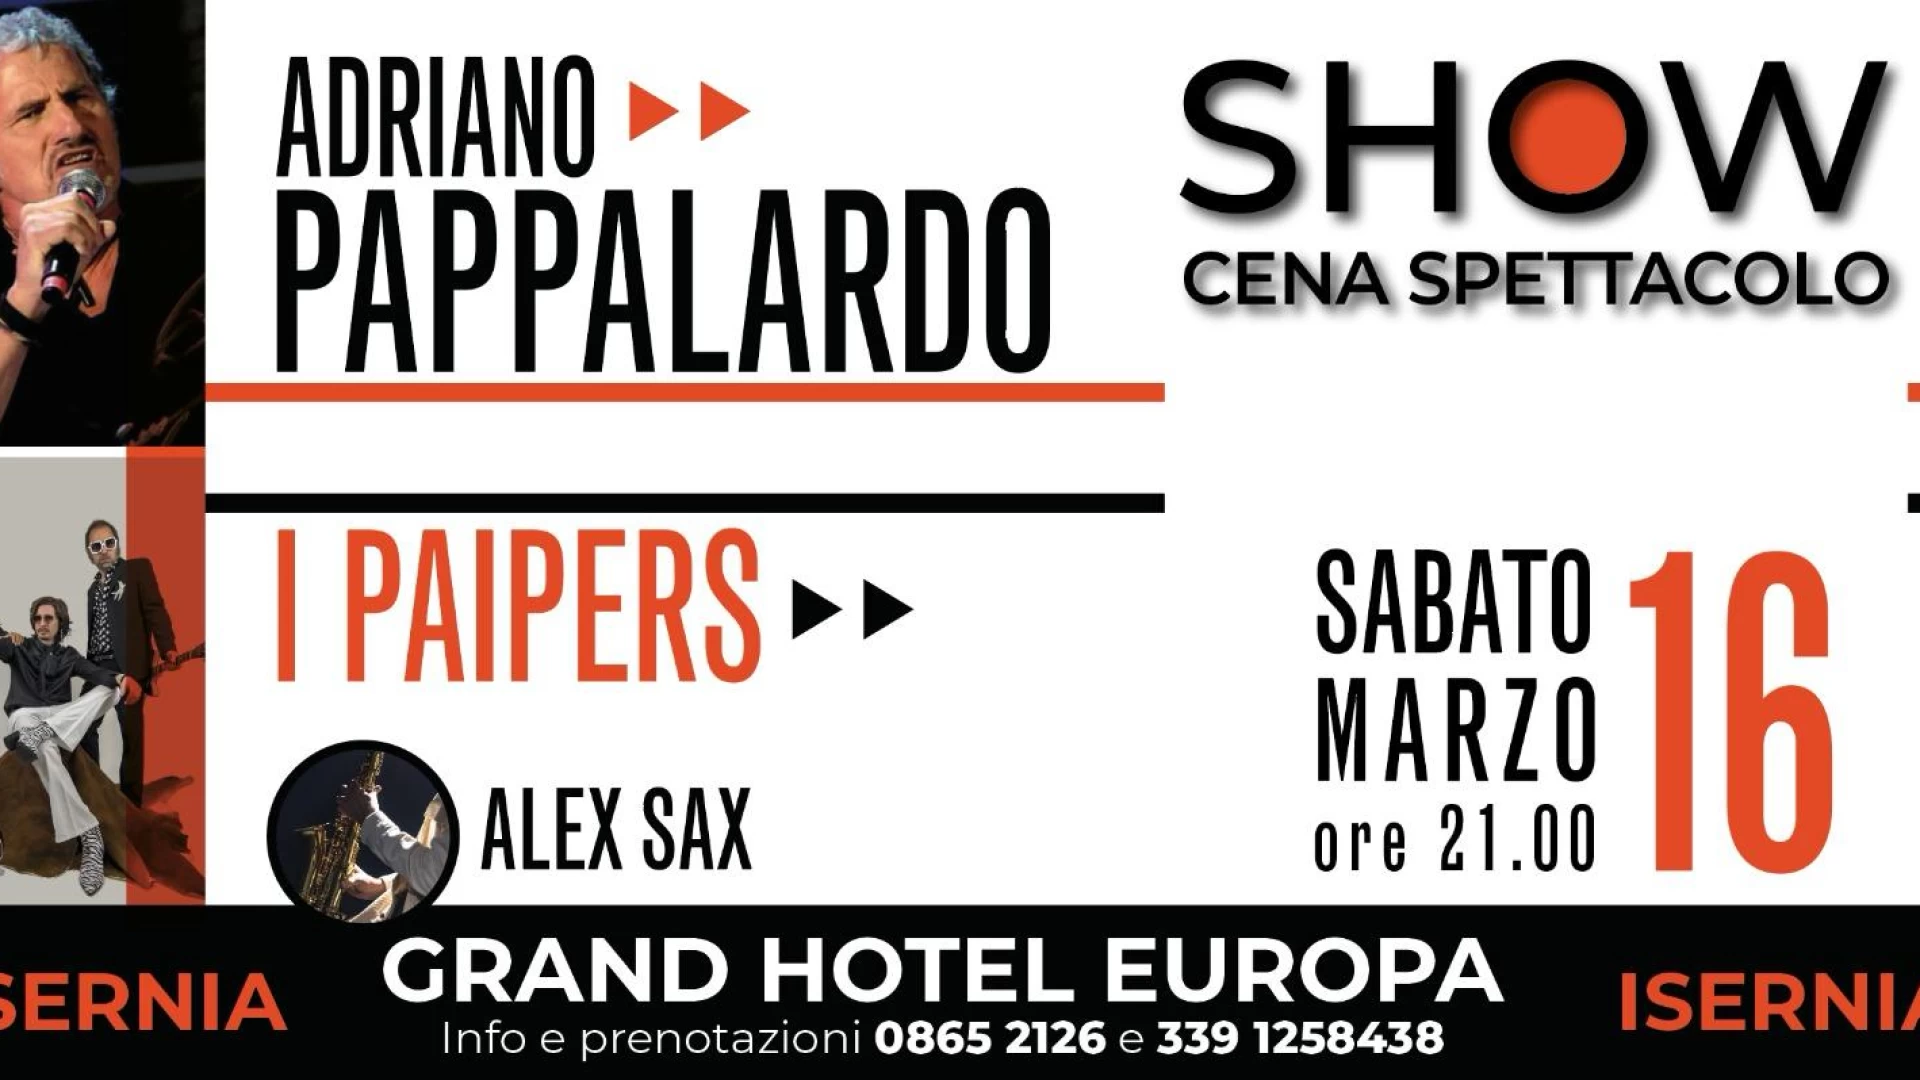 Isernia: sabato 16 marzo cena spettacolo al Grand Hotel Europa. E’ il turno del “mitico” Adriano Pappalardo. Partite le prenotazioni dei tavoli.